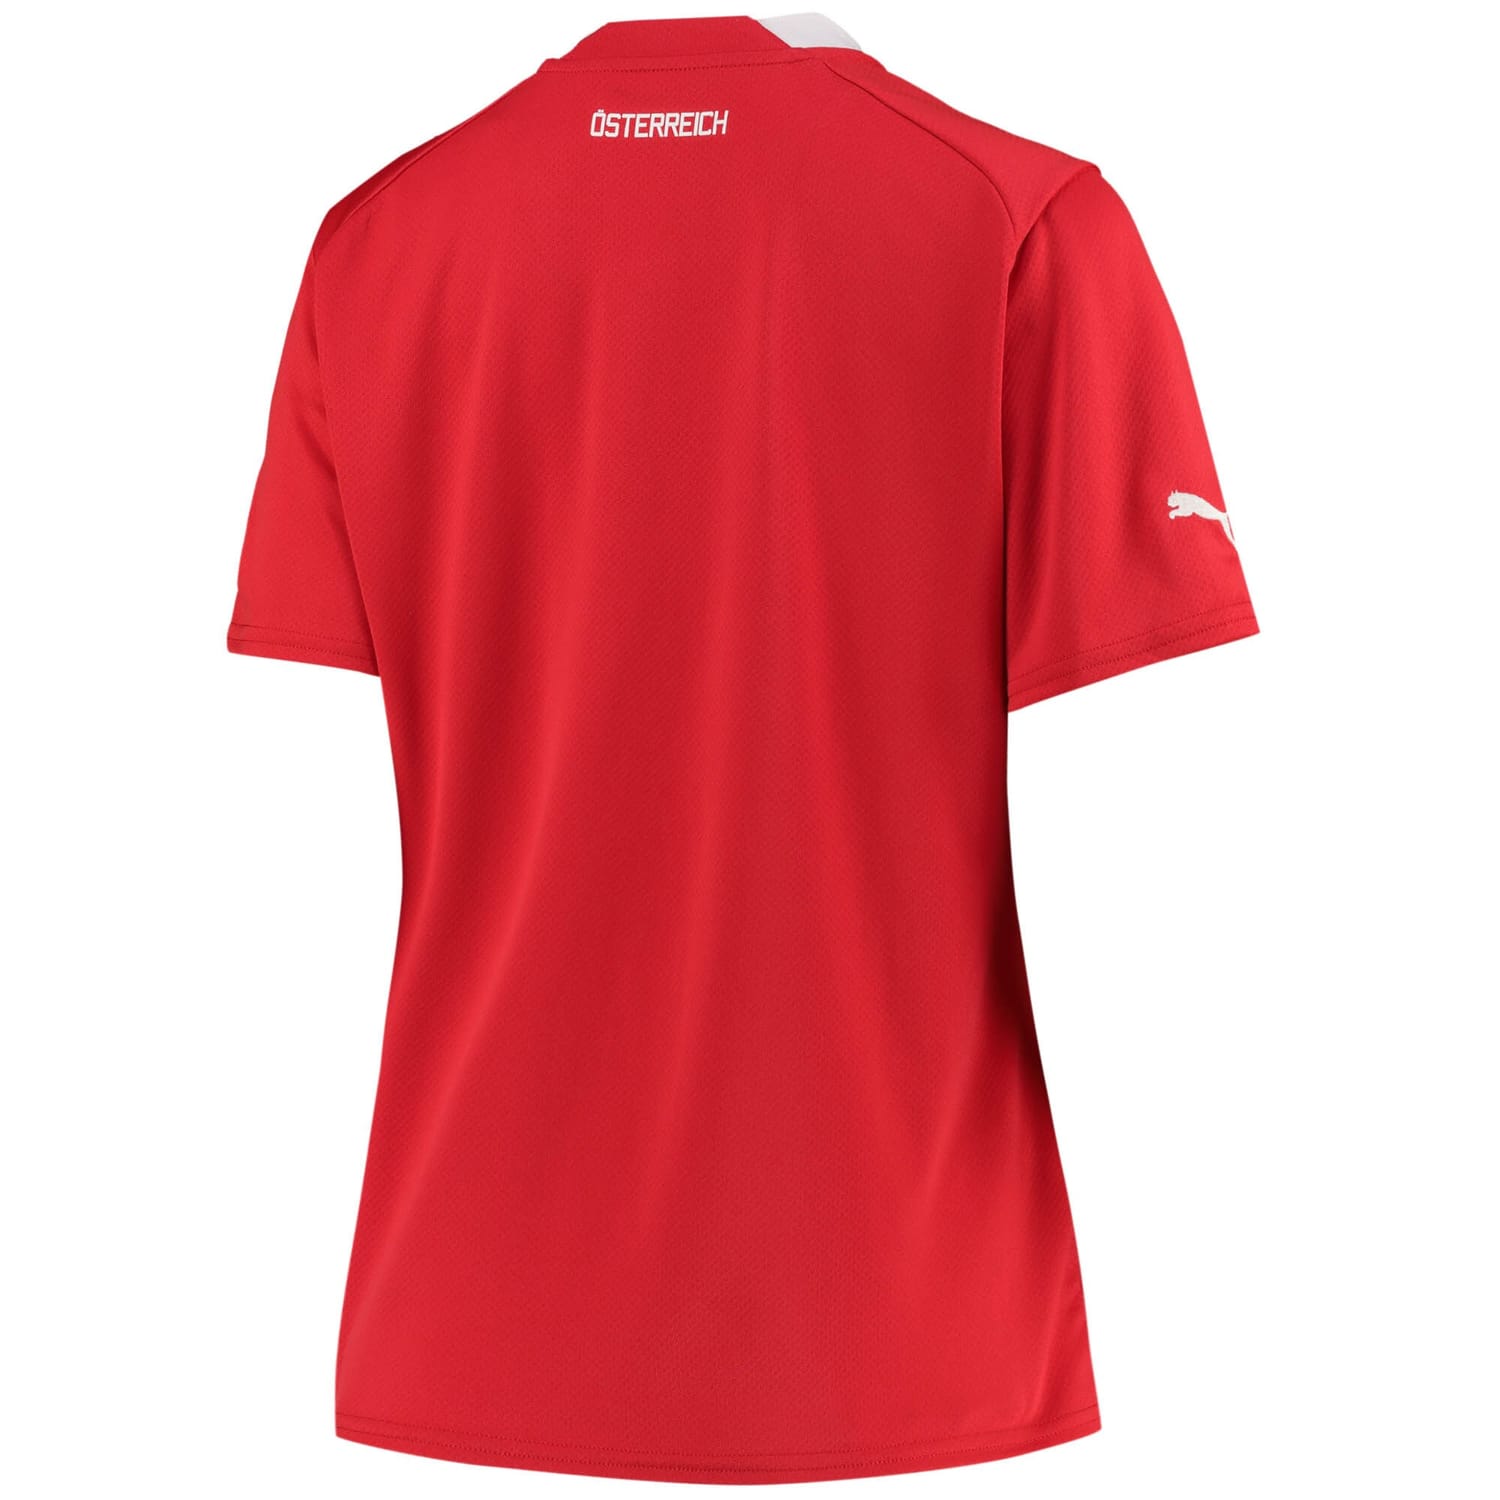 Austria National Team Home Jersey Shirt 2022 for Women